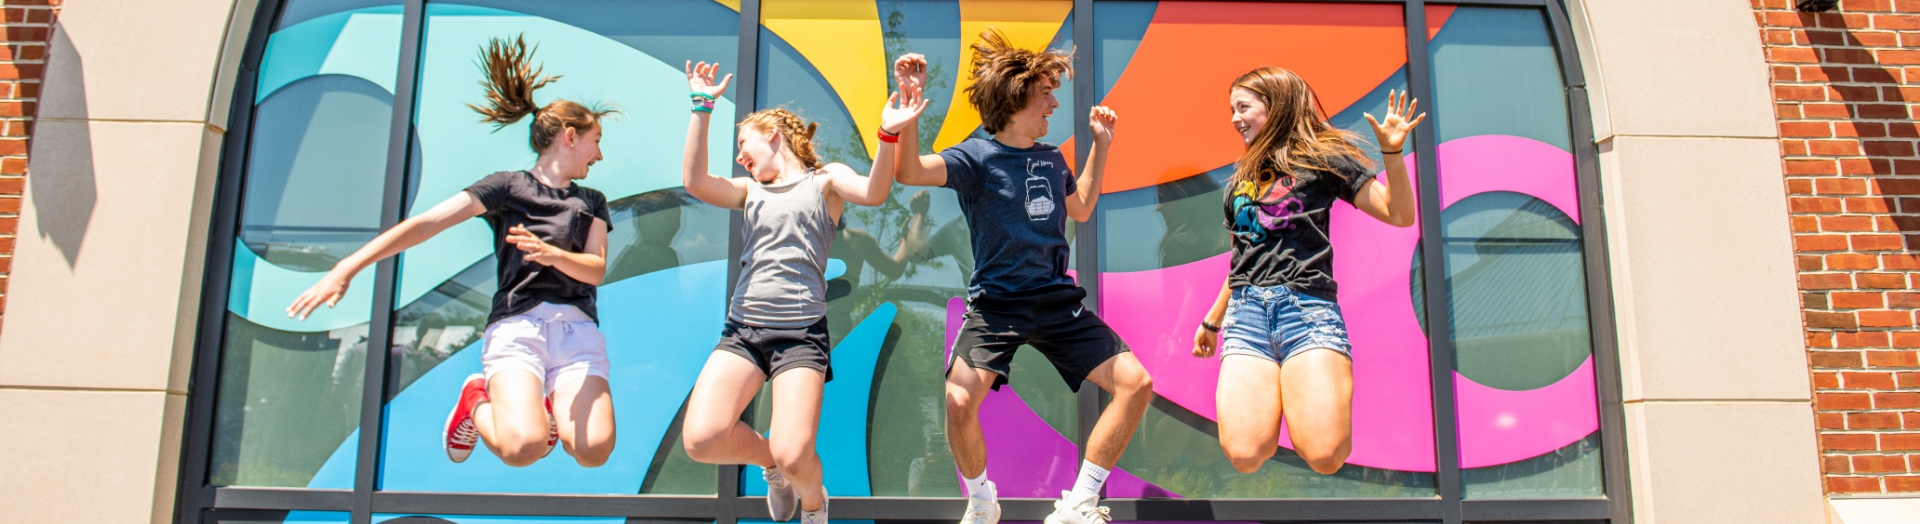 Teens jumping in front of pinwheel logo at Hersheypark